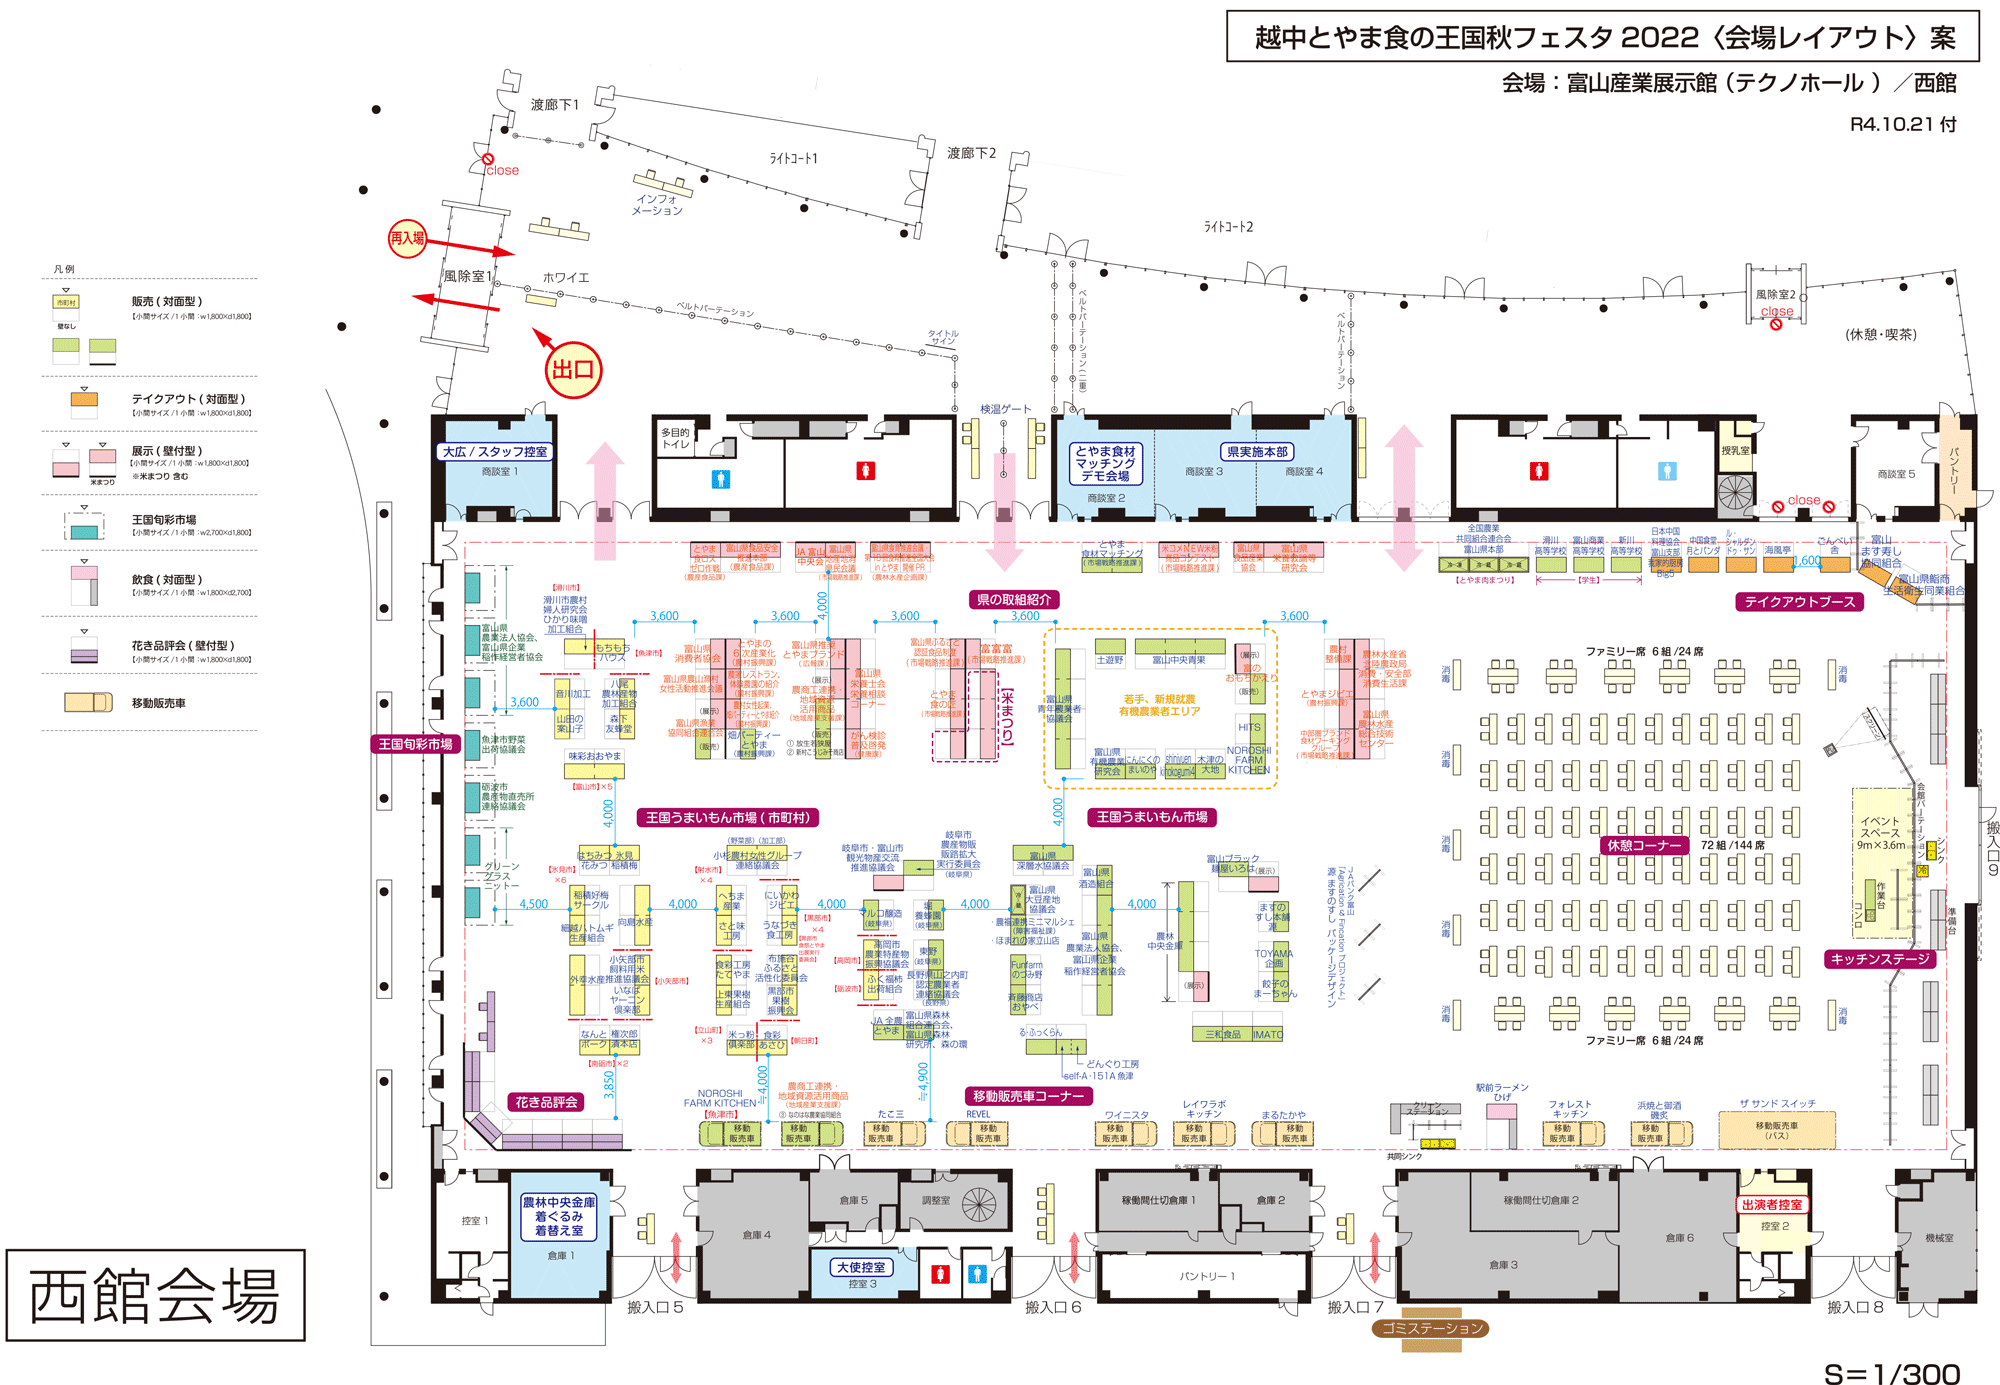 テクノホールで開催される「越中とやま食の王国秋フェスタ2022」の会場マップ2